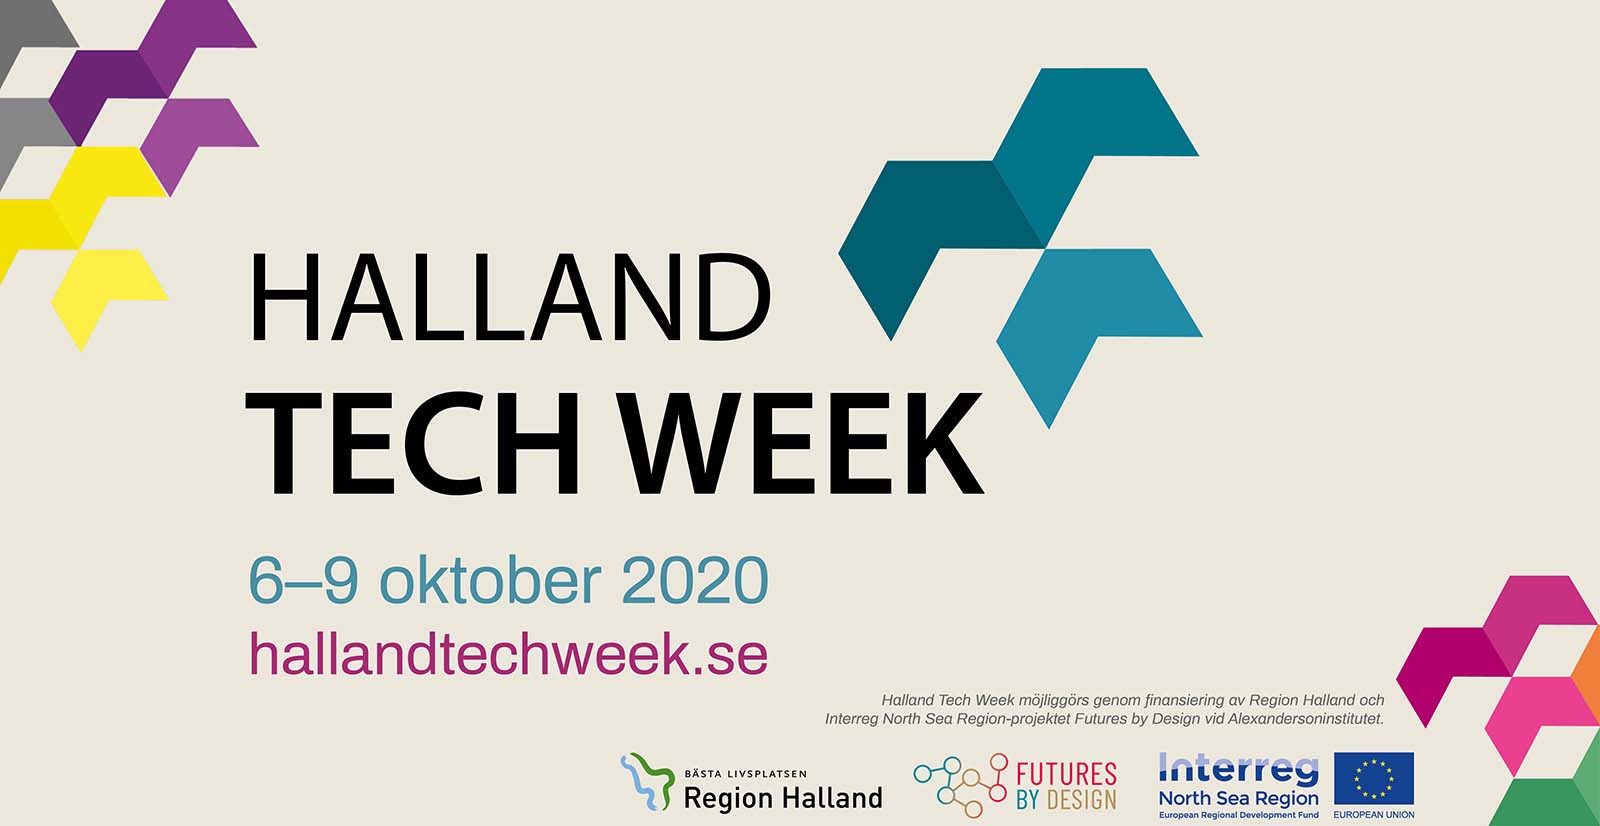 Halland Tech Week pågår 6-9 oktober 2020, besök www.hallandtechweek.se för mer information.